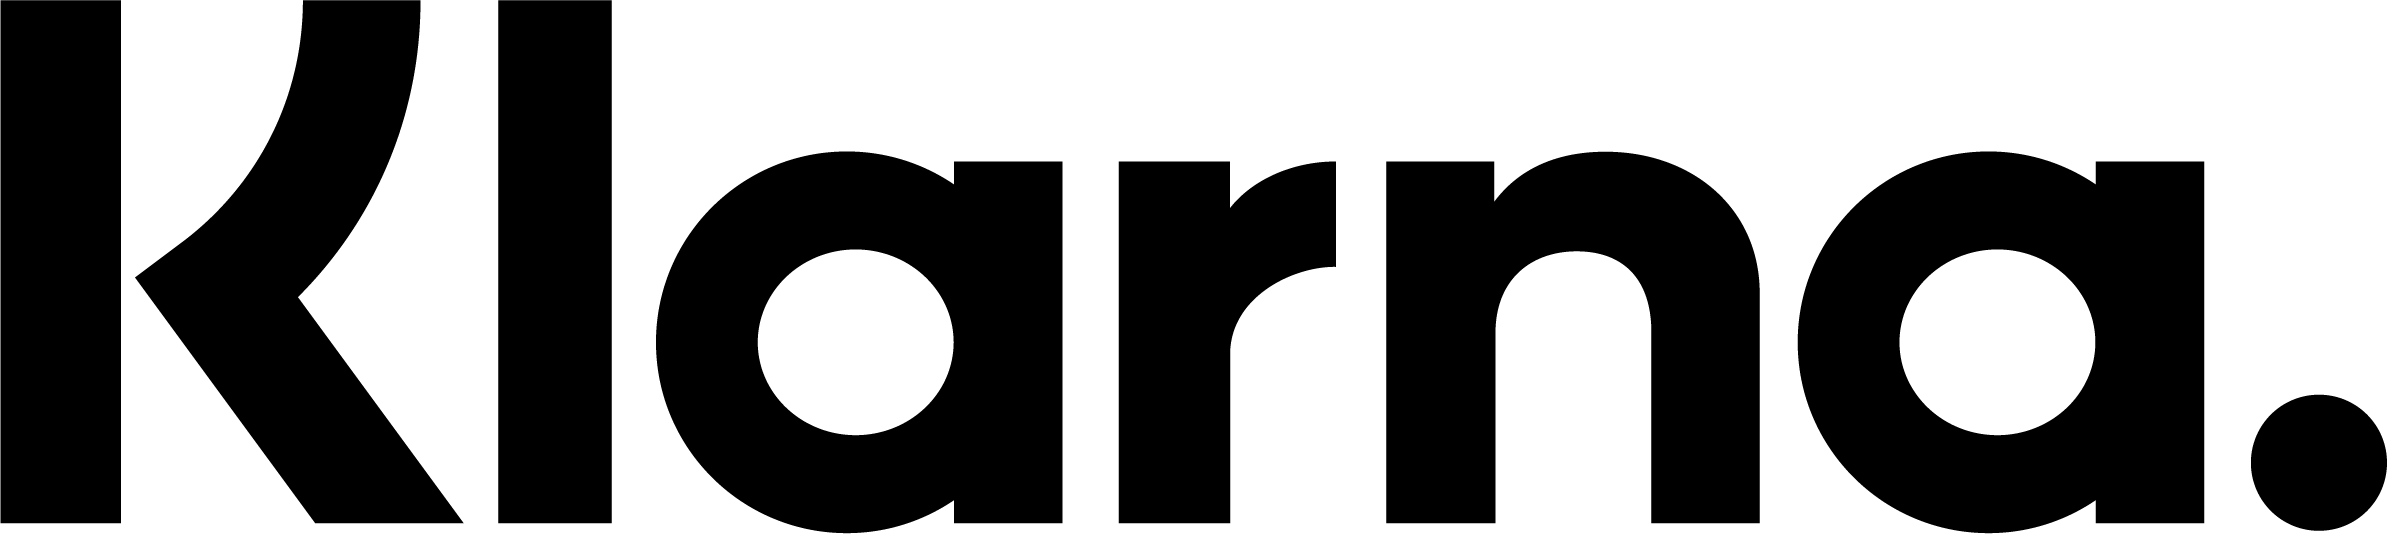 Klarna Logo Primary Black 2 1 1